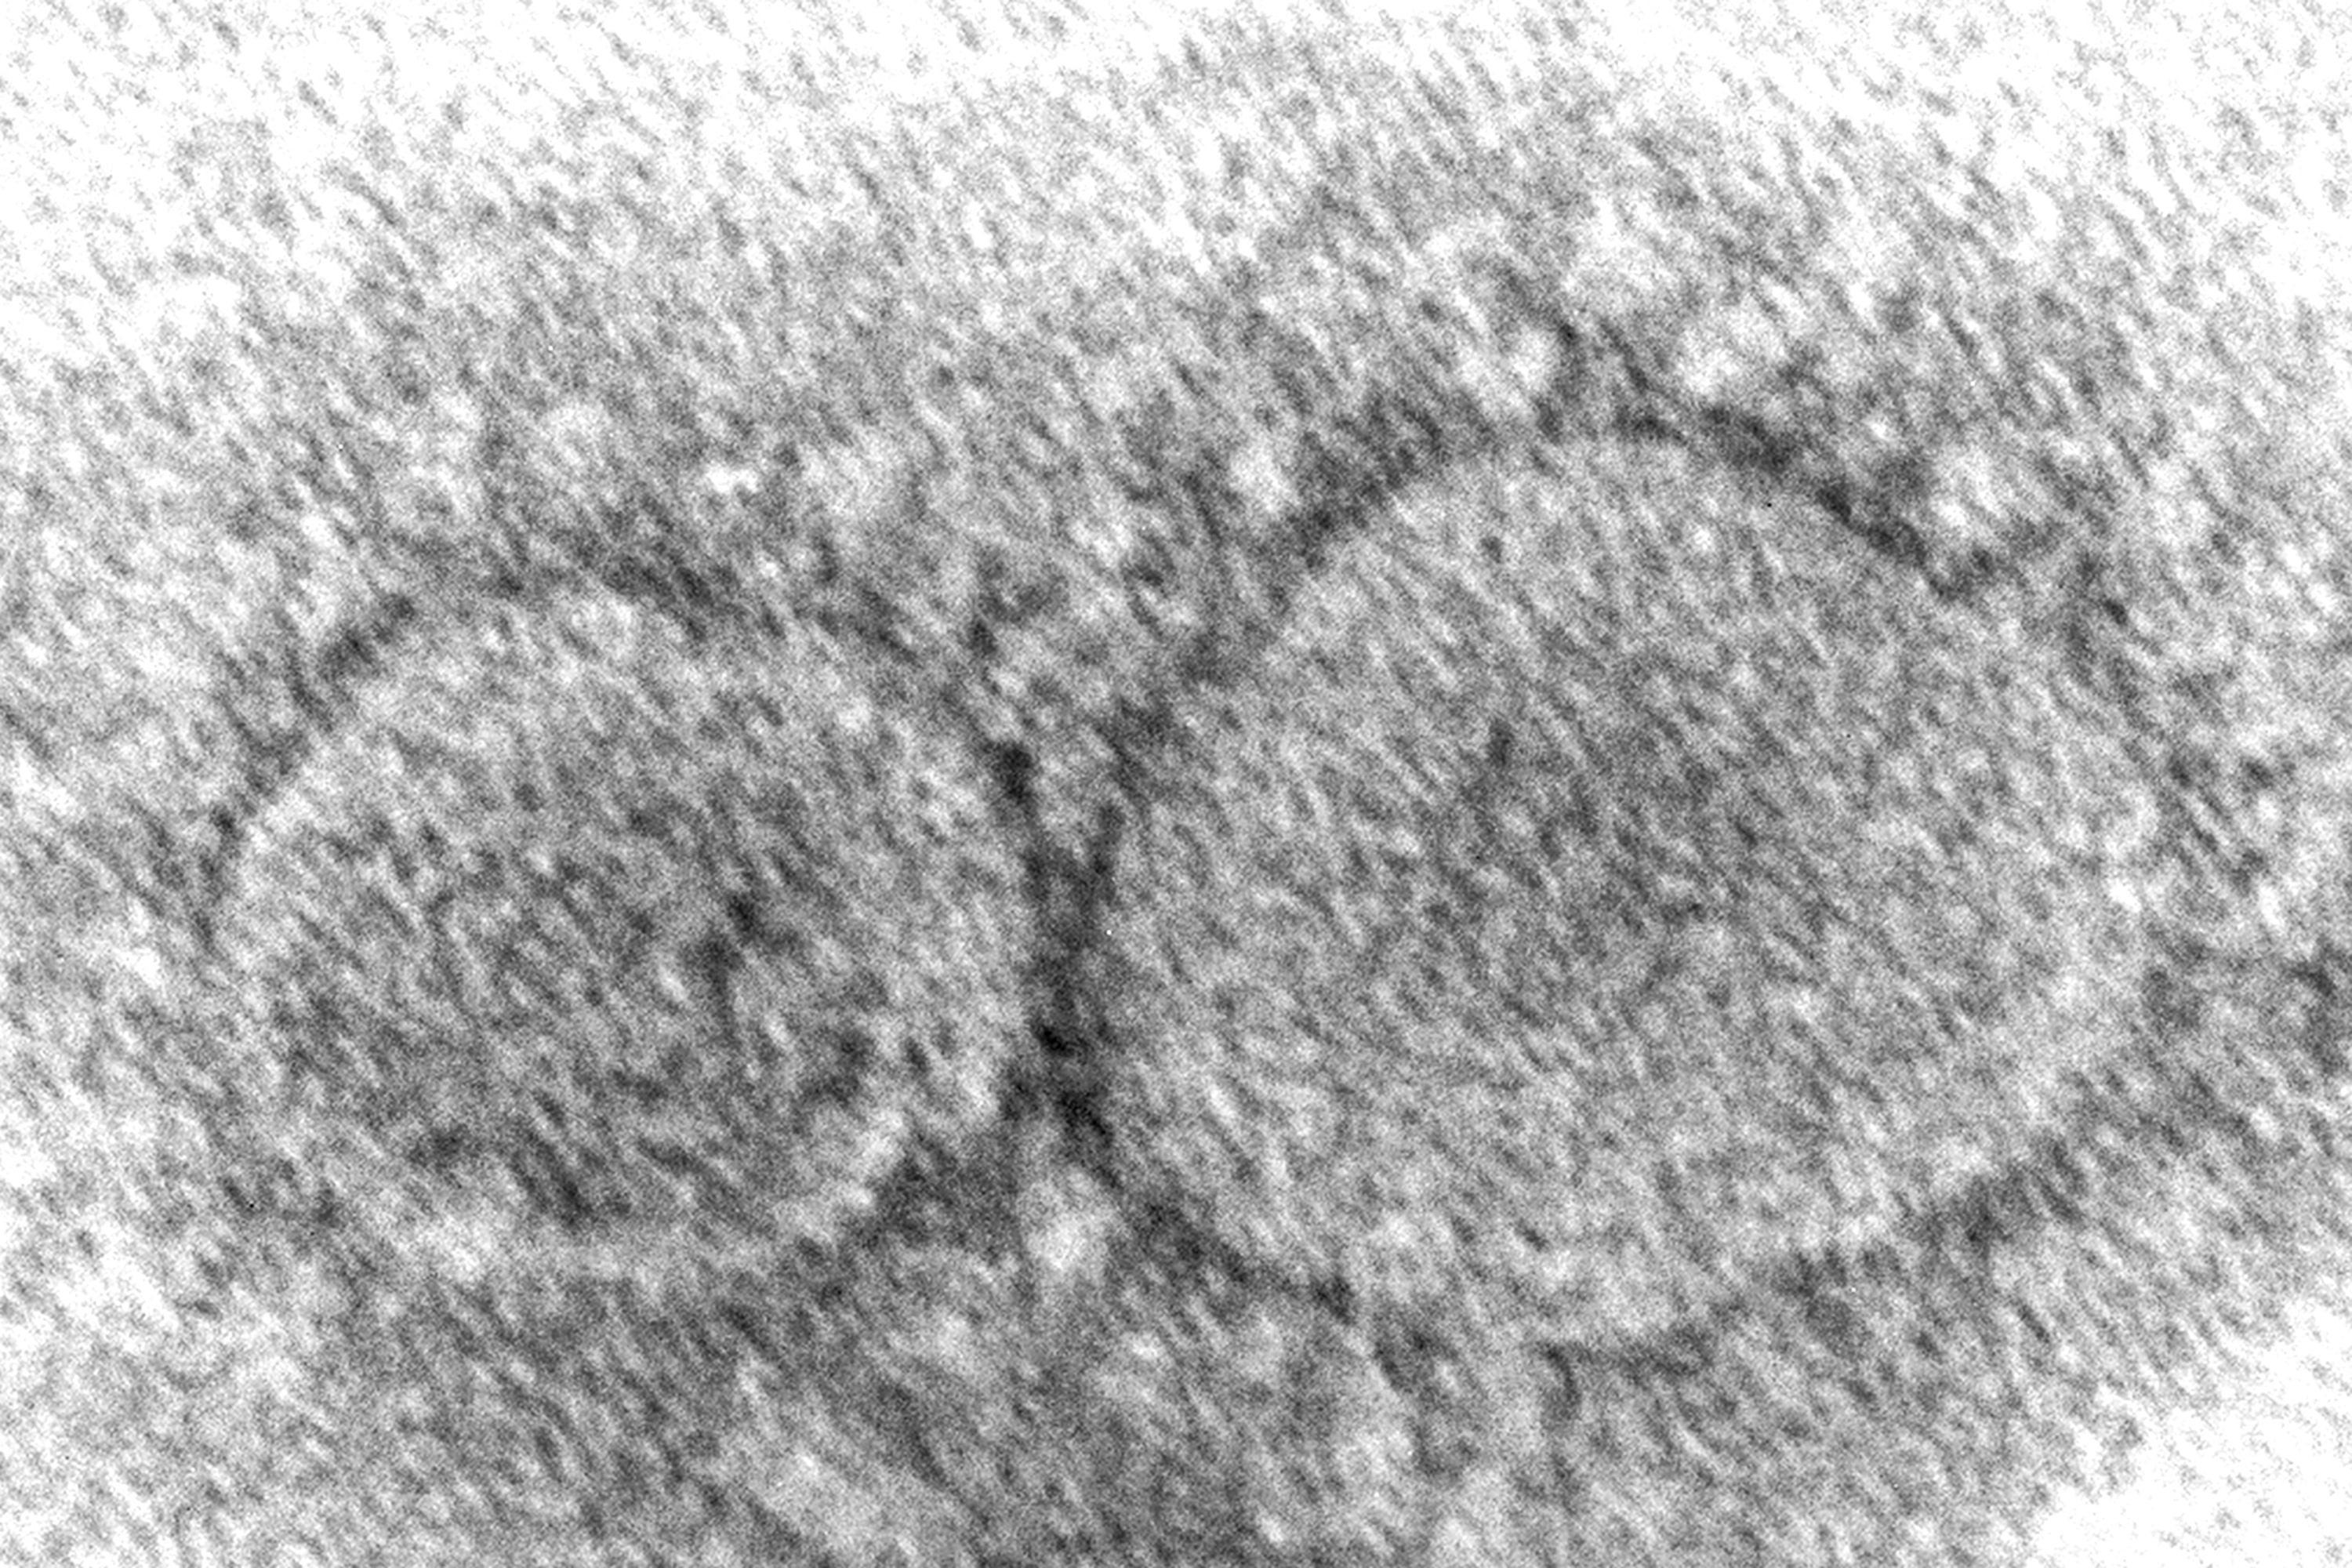 Esta imagen de microscopio de 2020 proporcionada por los Centros para el Control y la Prevención de Enfermedades de Estados Unidos muestra partículas del virus SARS-CoV-2, que causan el COVID-19 (Hannah A. Bullock, Azaibi Tamin/CDC via AP, Archivo)